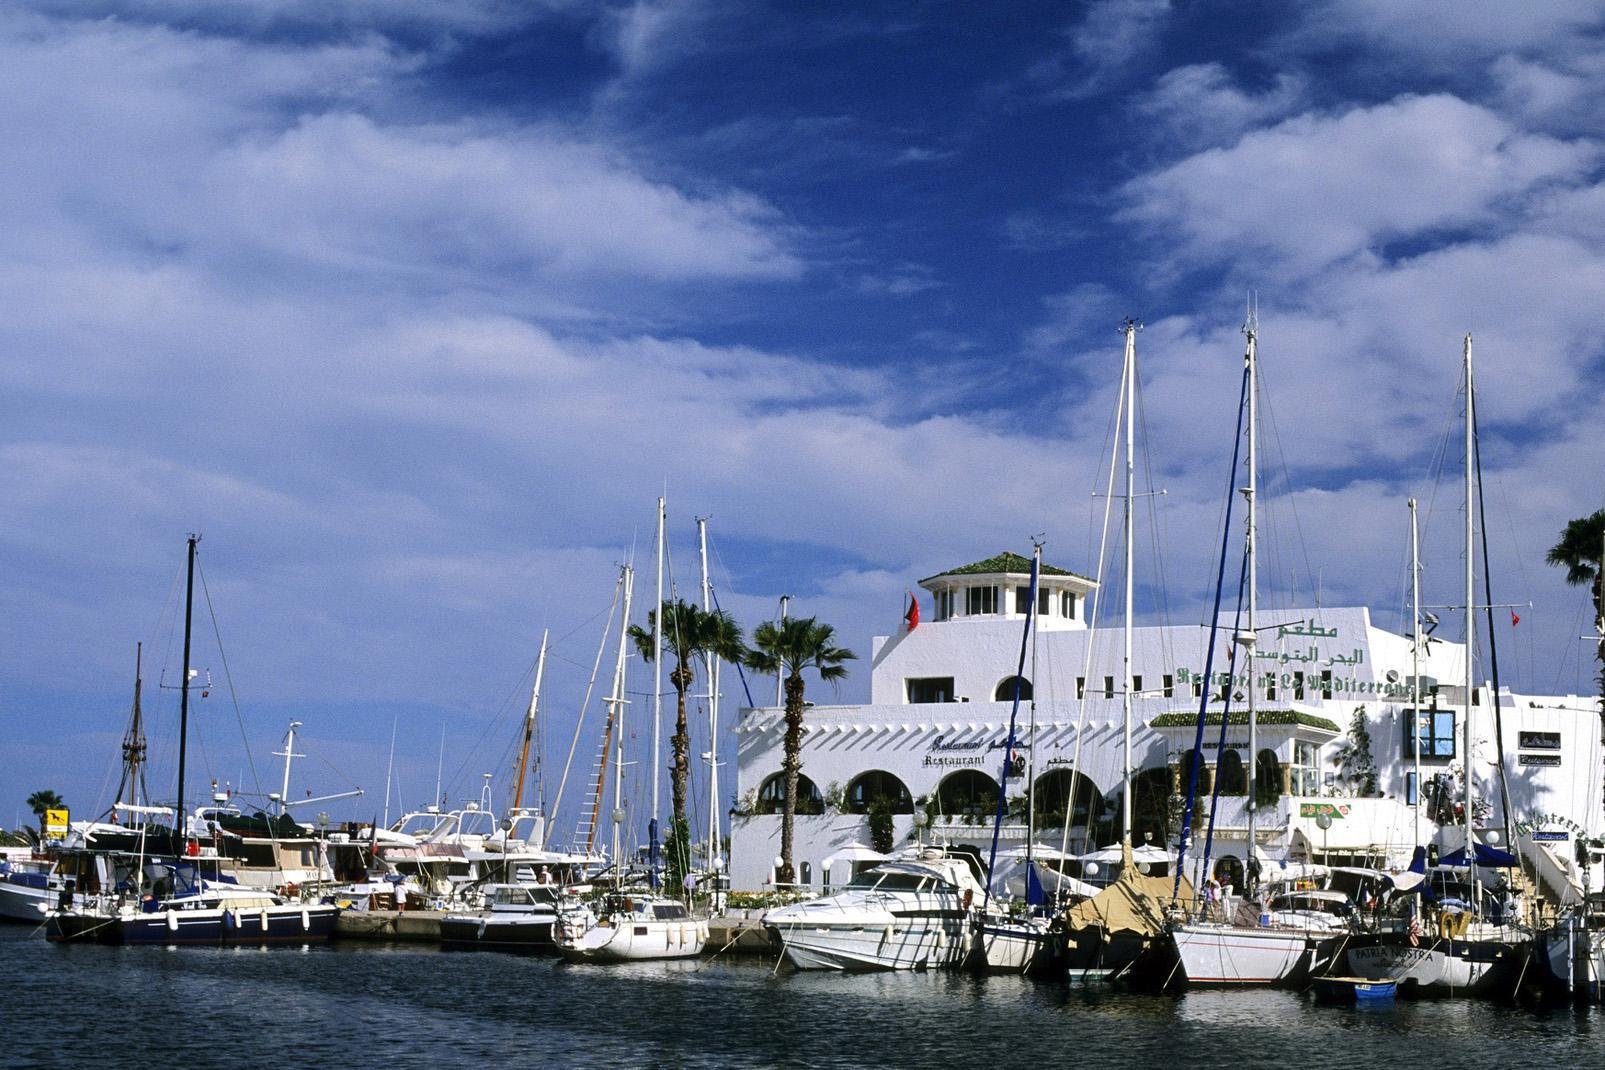 On dit de Port El Kantaoui que c'est un peu le Saint-Tropez tunisien. L'atmosphère y est gentiment chic, sans paillettes ni foule excessive, au bord d'une marina qui accueille aussi bien des yachts que des bateaux de croisière à la journée. Il faut choisir Port El Kantaoui pour son charme, pour son ambiance en saison et pour ses plages qui comptent parmi les plus belles de la riviera tunisienne.
On ...